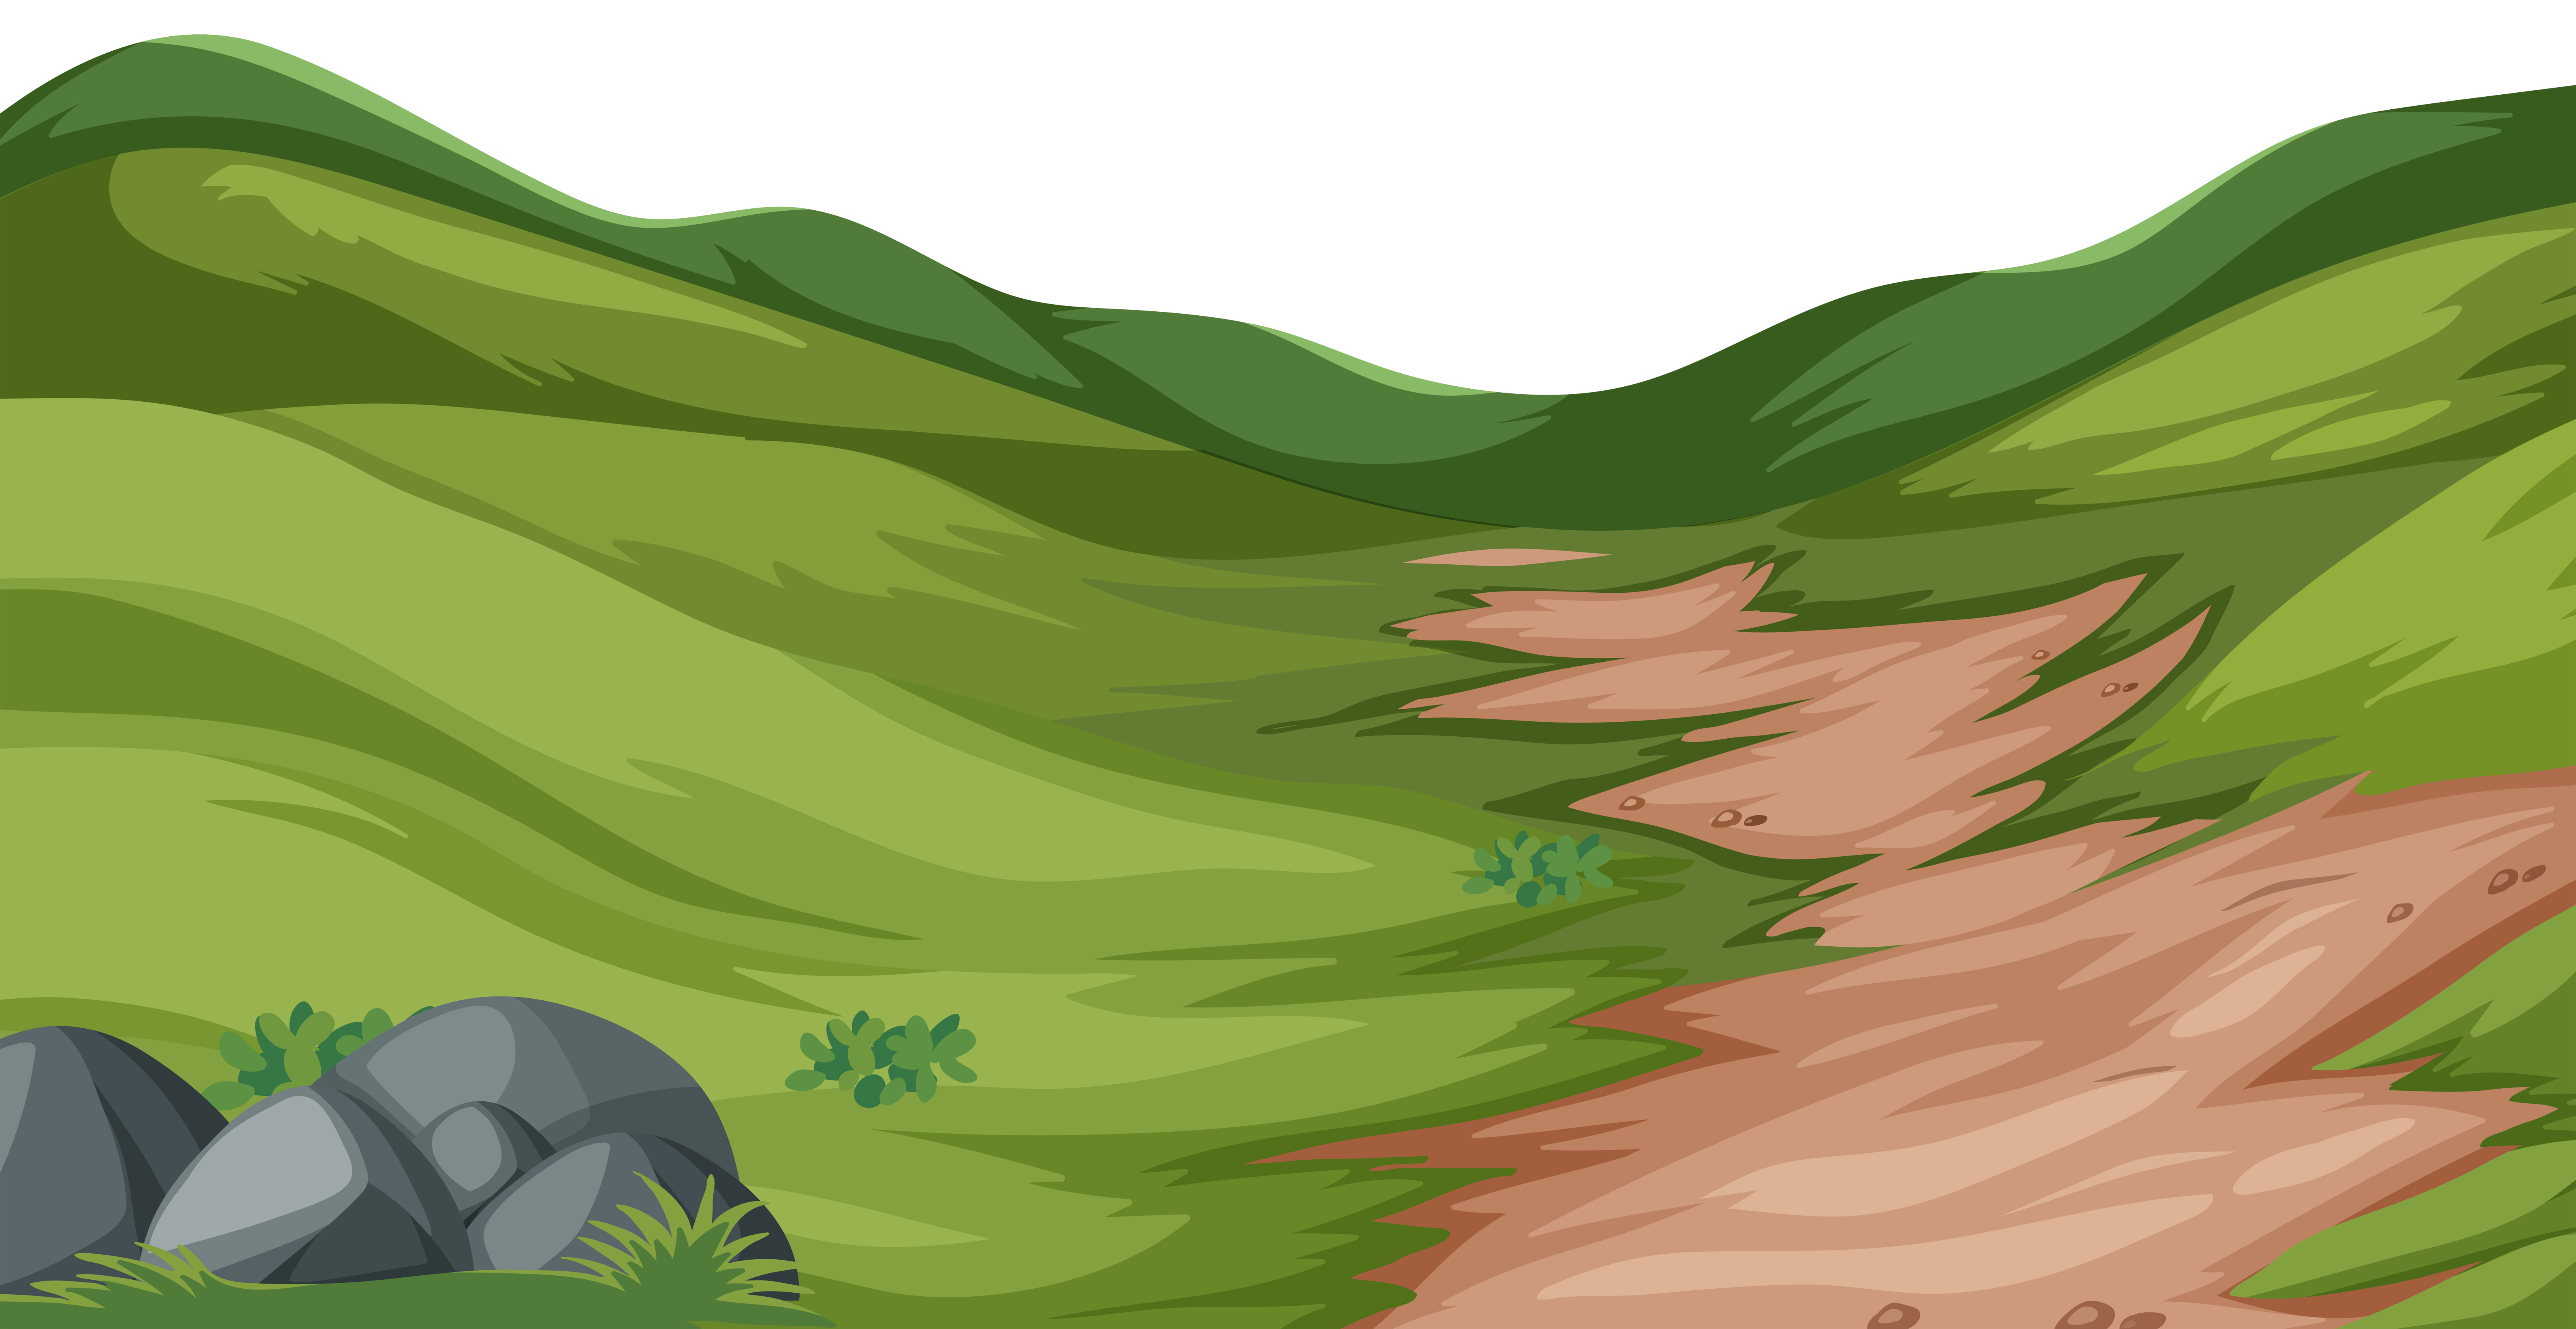 Download Nature hill landscape vector - Download Free Vectors ...